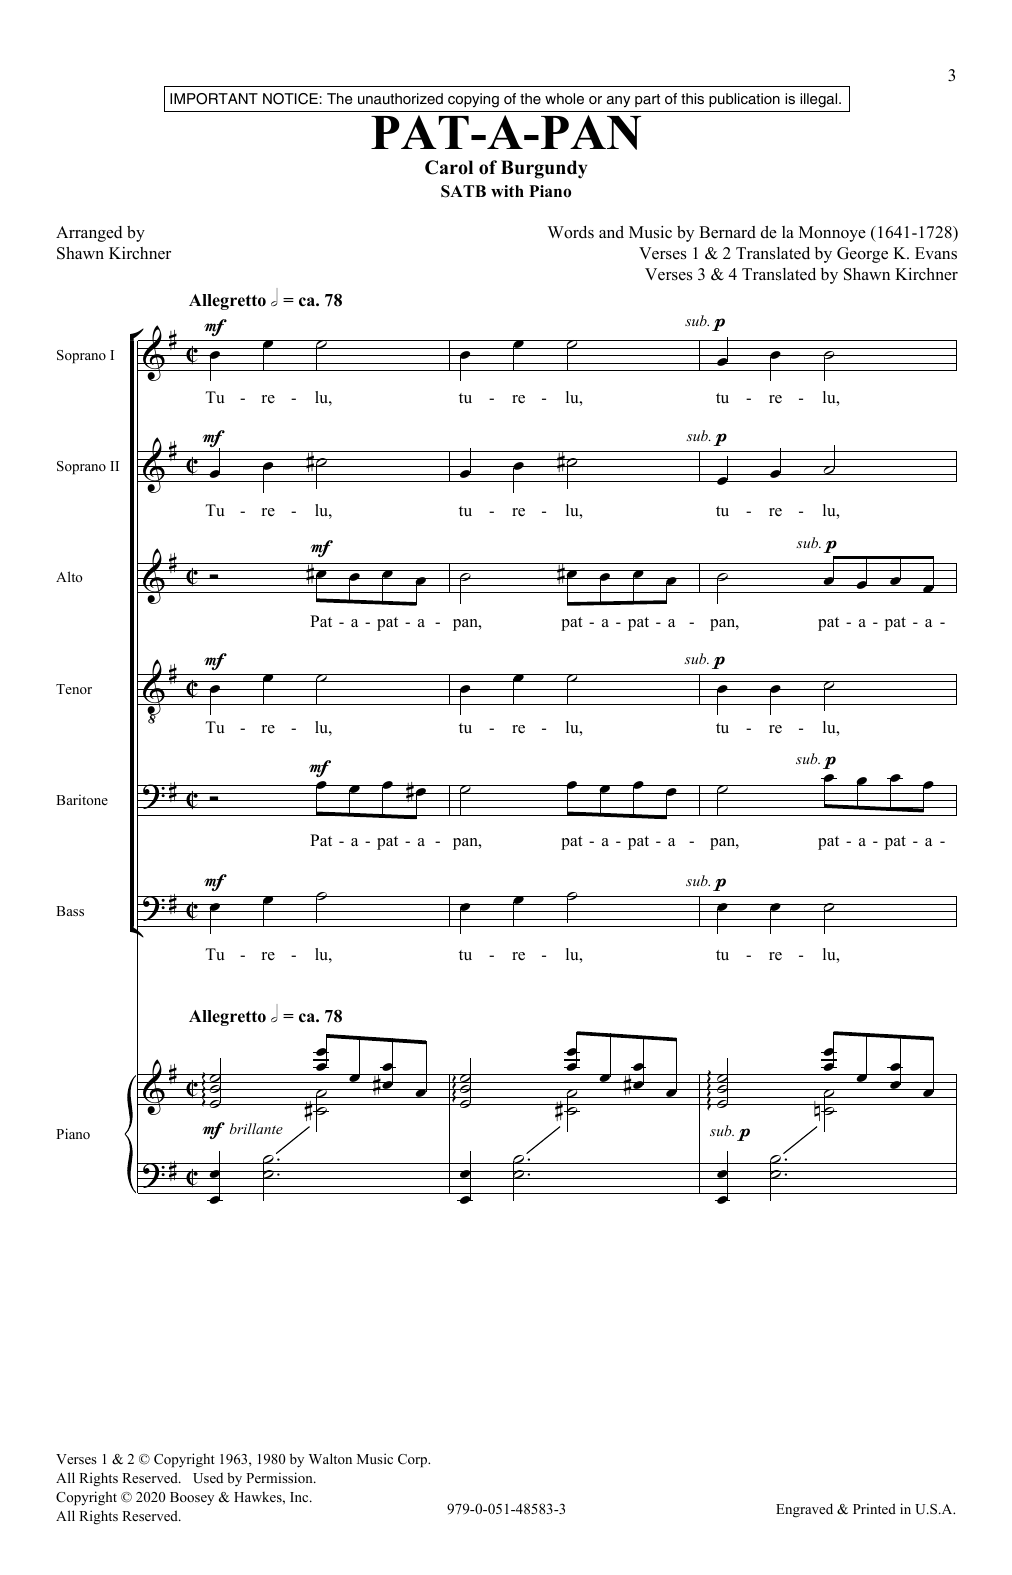 Bernard de la Monnoye Pat-A-Pan (arr. Shawn Kirchner) Sheet Music Notes & Chords for SATB Choir - Download or Print PDF